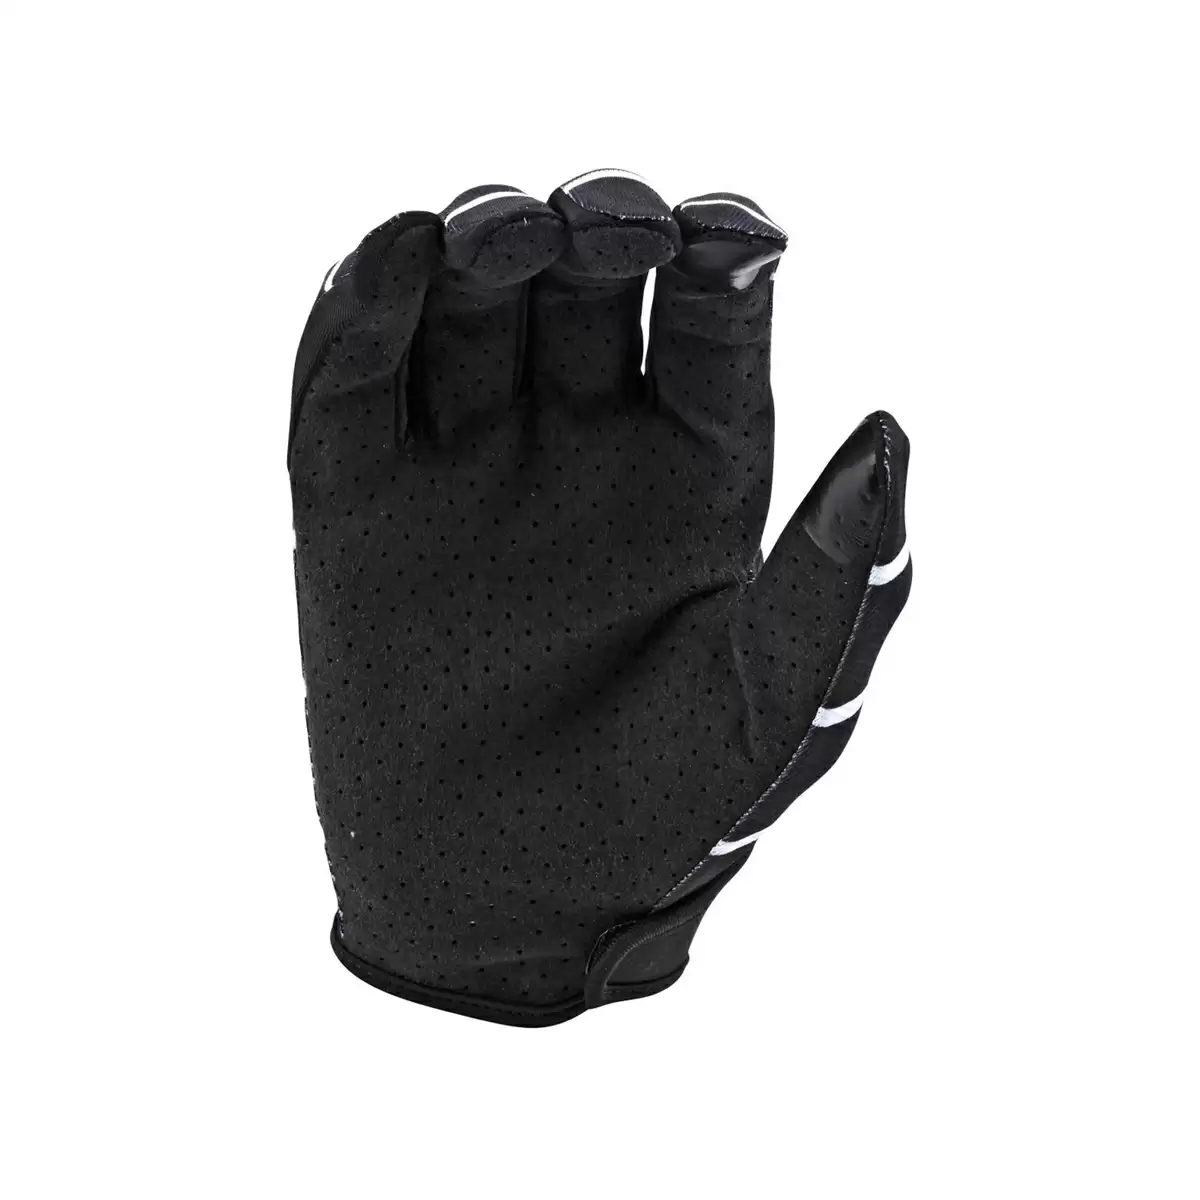 Gloves Flowline Stripe Black Size M #1